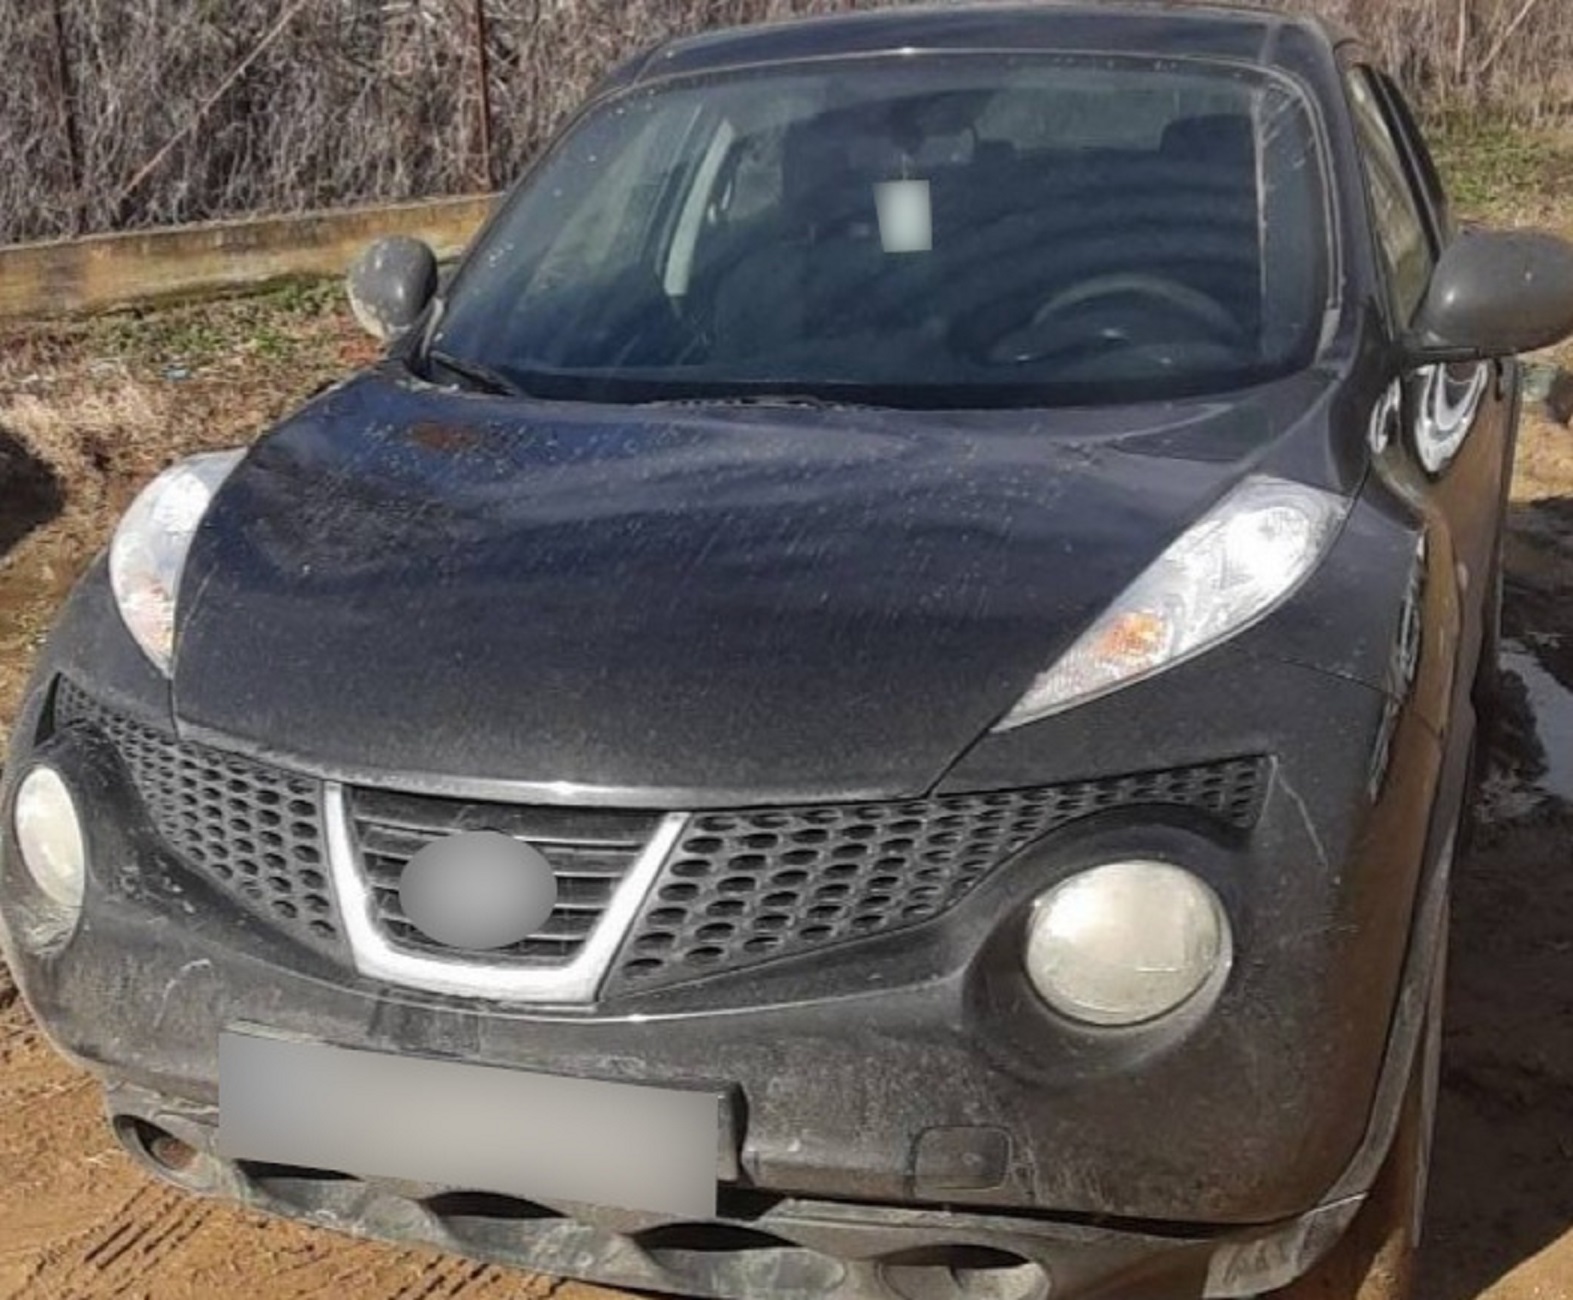 Έβρος: Αυτό το SUV αυτοκίνητο που έψαχνε η αστυνομία ακινητοποιήθηκε με ένα τρόπο επεισοδιακό